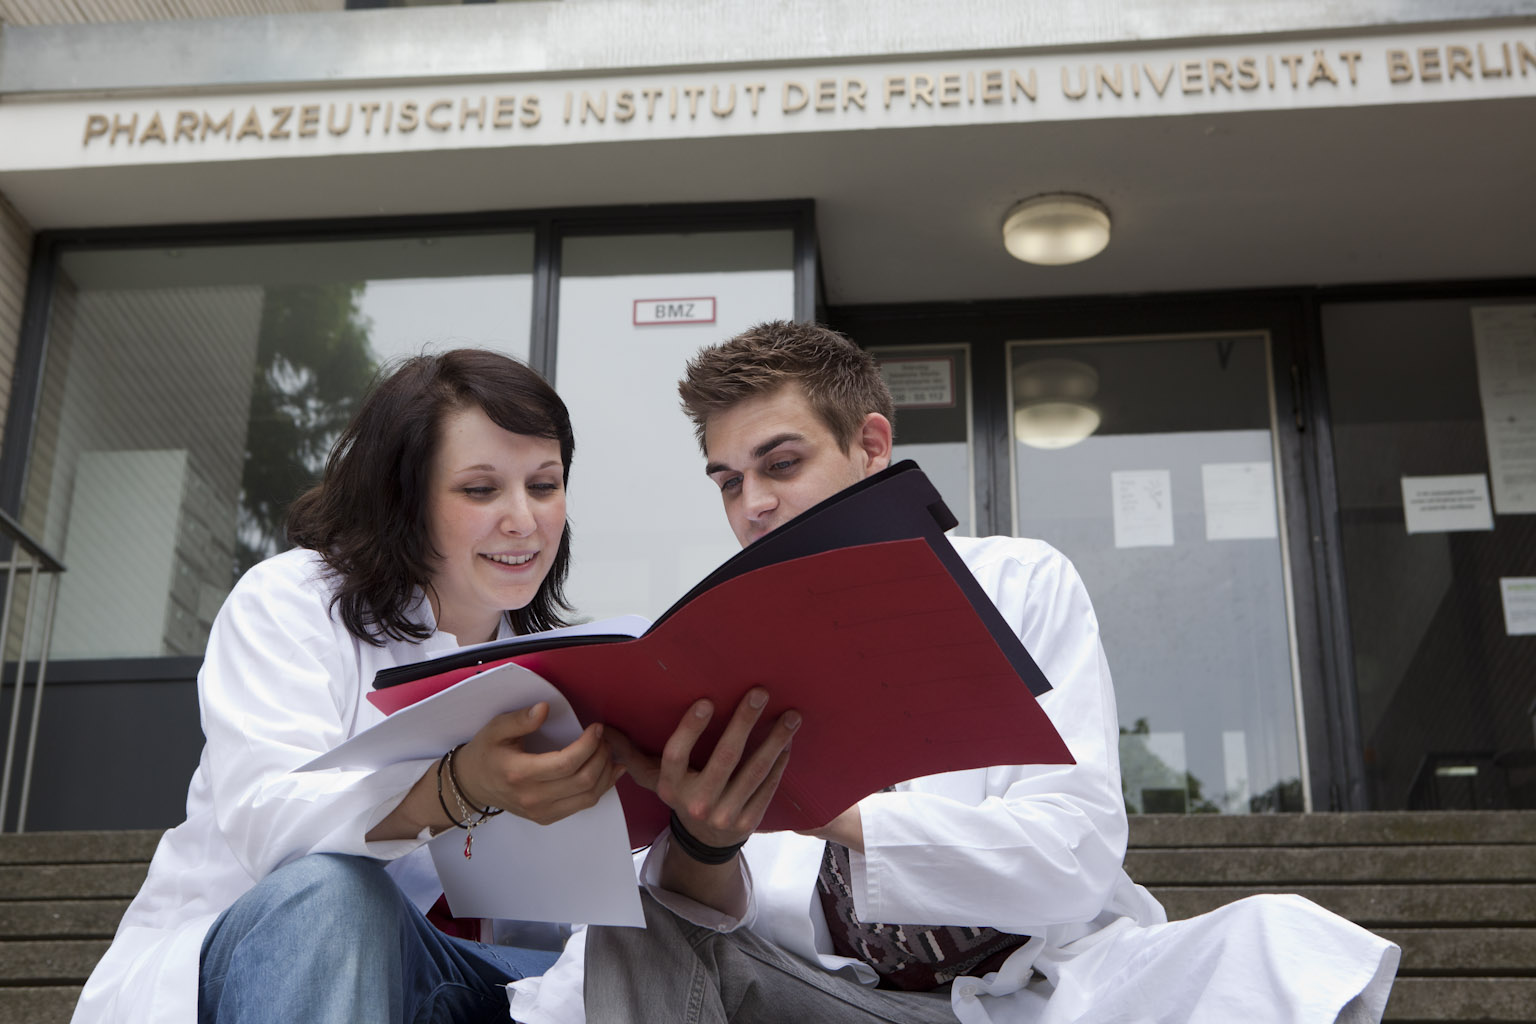 Pharmaziestudierende sitzen in Unterlagen lesend vor der Uni Berlin